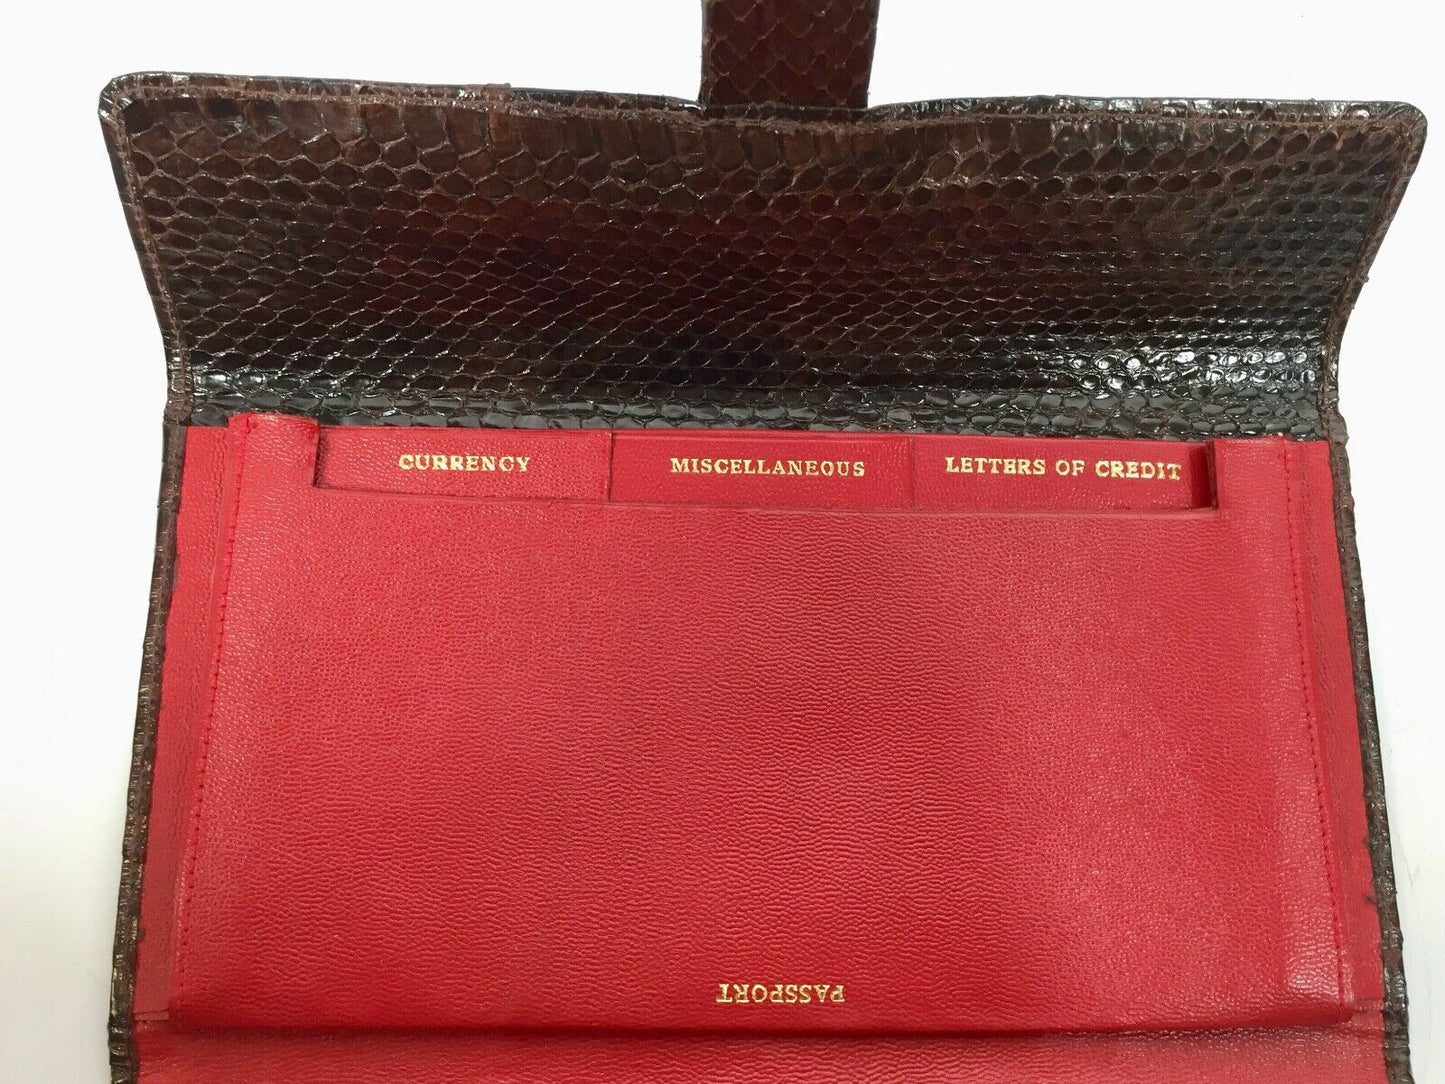 Vintage Leather Brown Snakeskin Travel Wallet / Purse / Ladies Bag Accessories